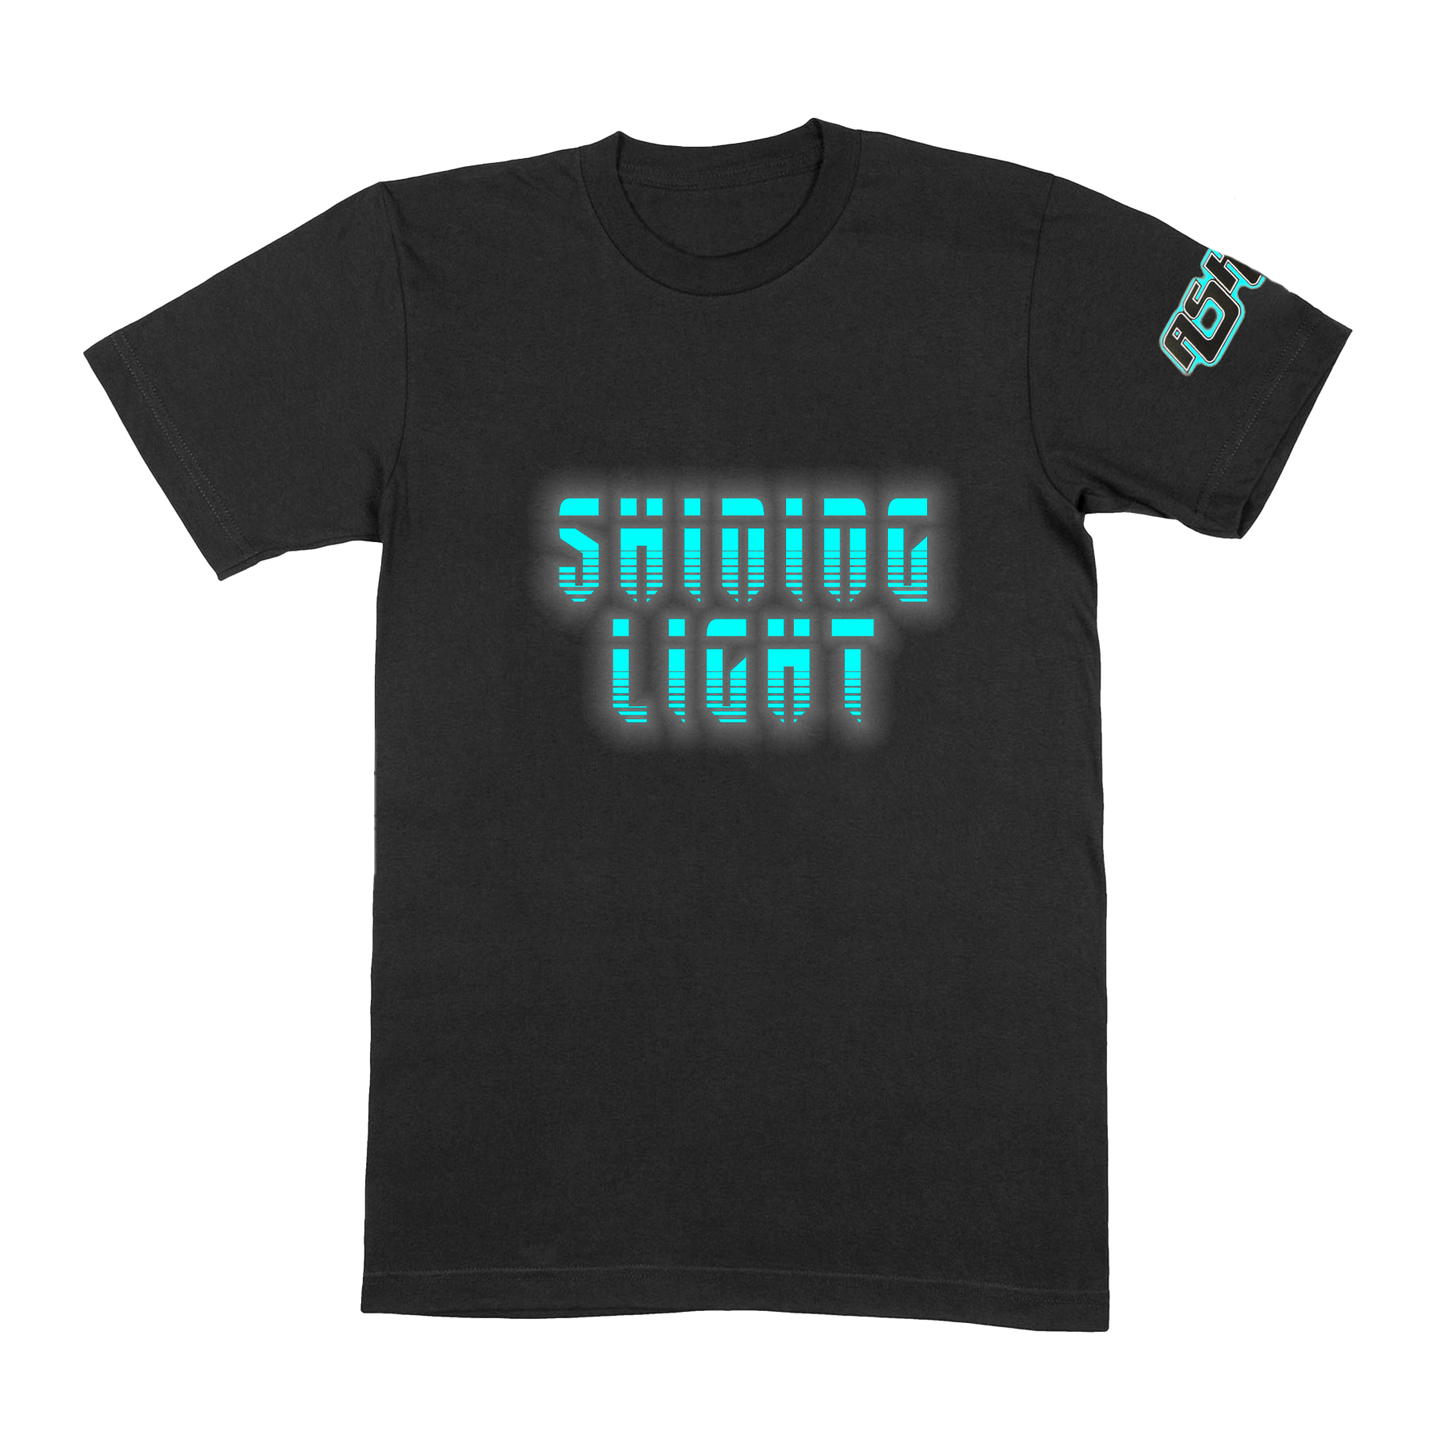 Shining Light - T-shirt